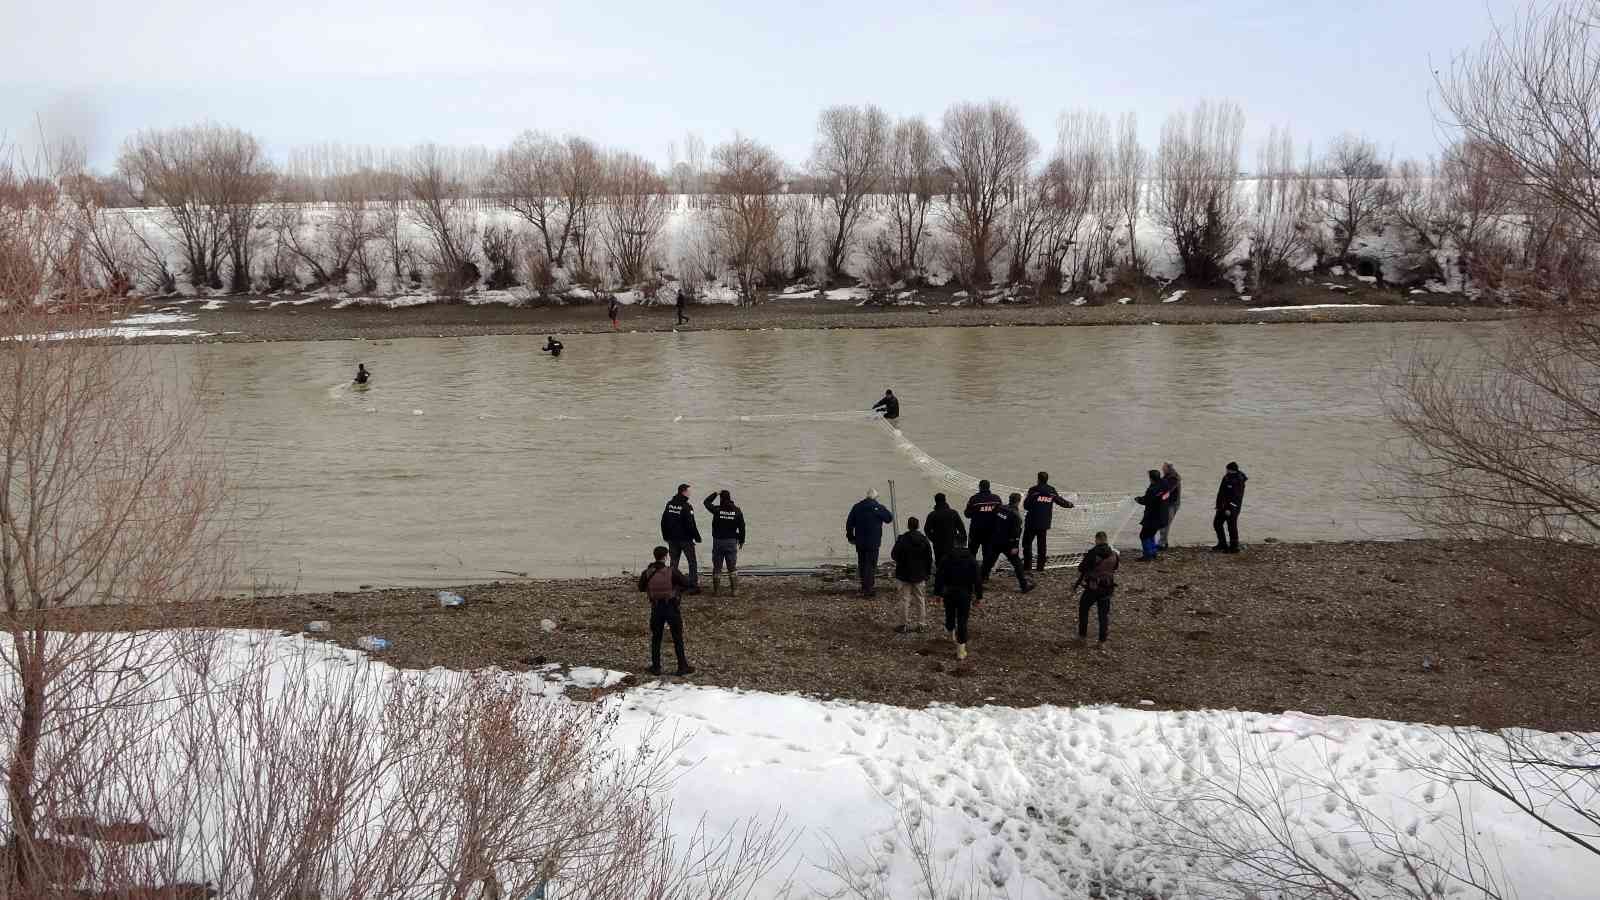 Muş’ta Karasu Nehri’nde kaybolan Yağmur için suya 50 metrelik ağ çekildi #mus